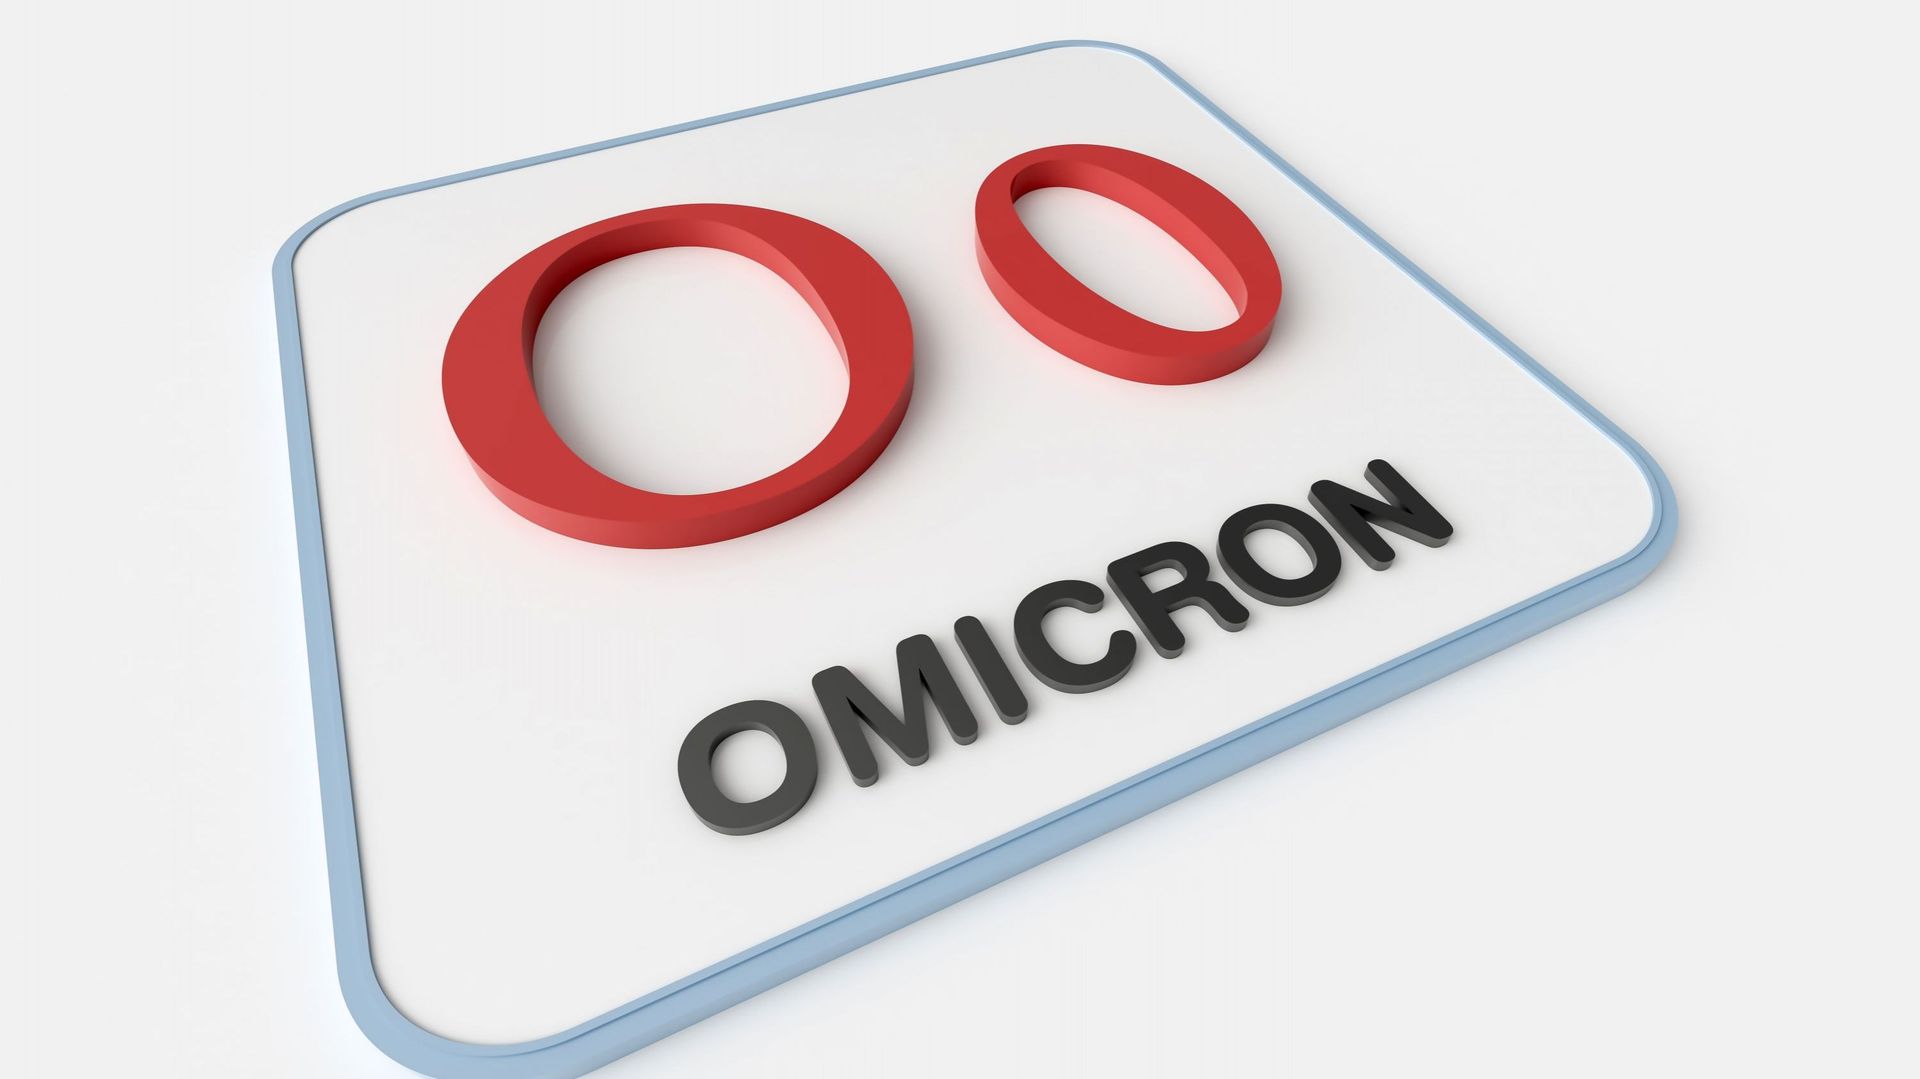 Ne dites pas "Nu" mais "Omicron" : le nouveau variant baptisé et classé "préoccupant" par l’OMS